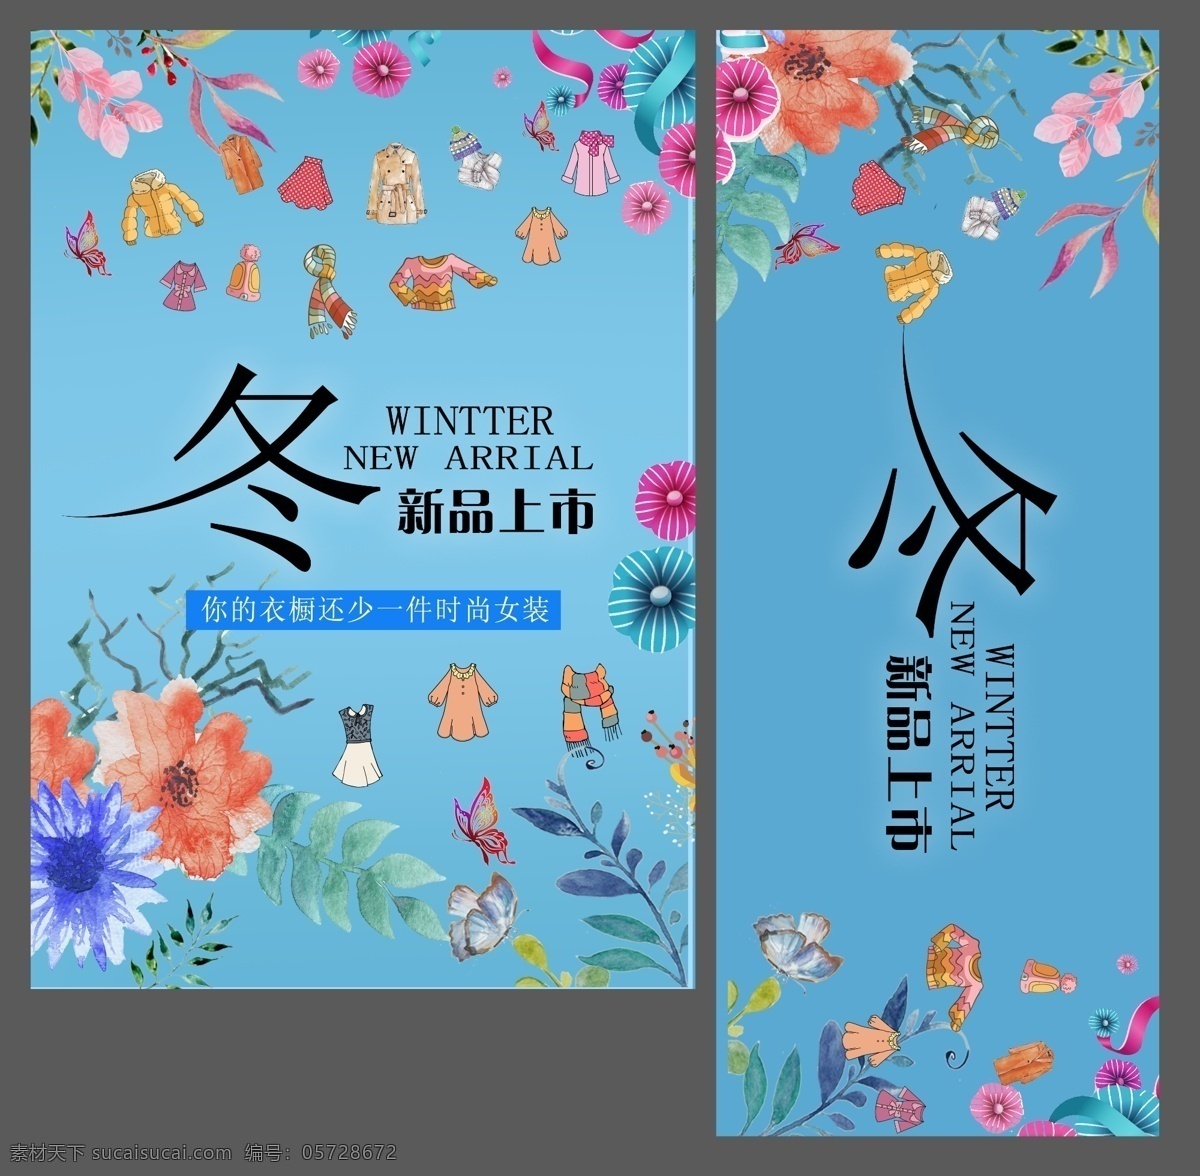 中国 风 手绘 冬季 新品上市 海报 卡通 服装 清新 背景 时尚女装 促销 浅蓝色 超 好看 蓝色 清新大气